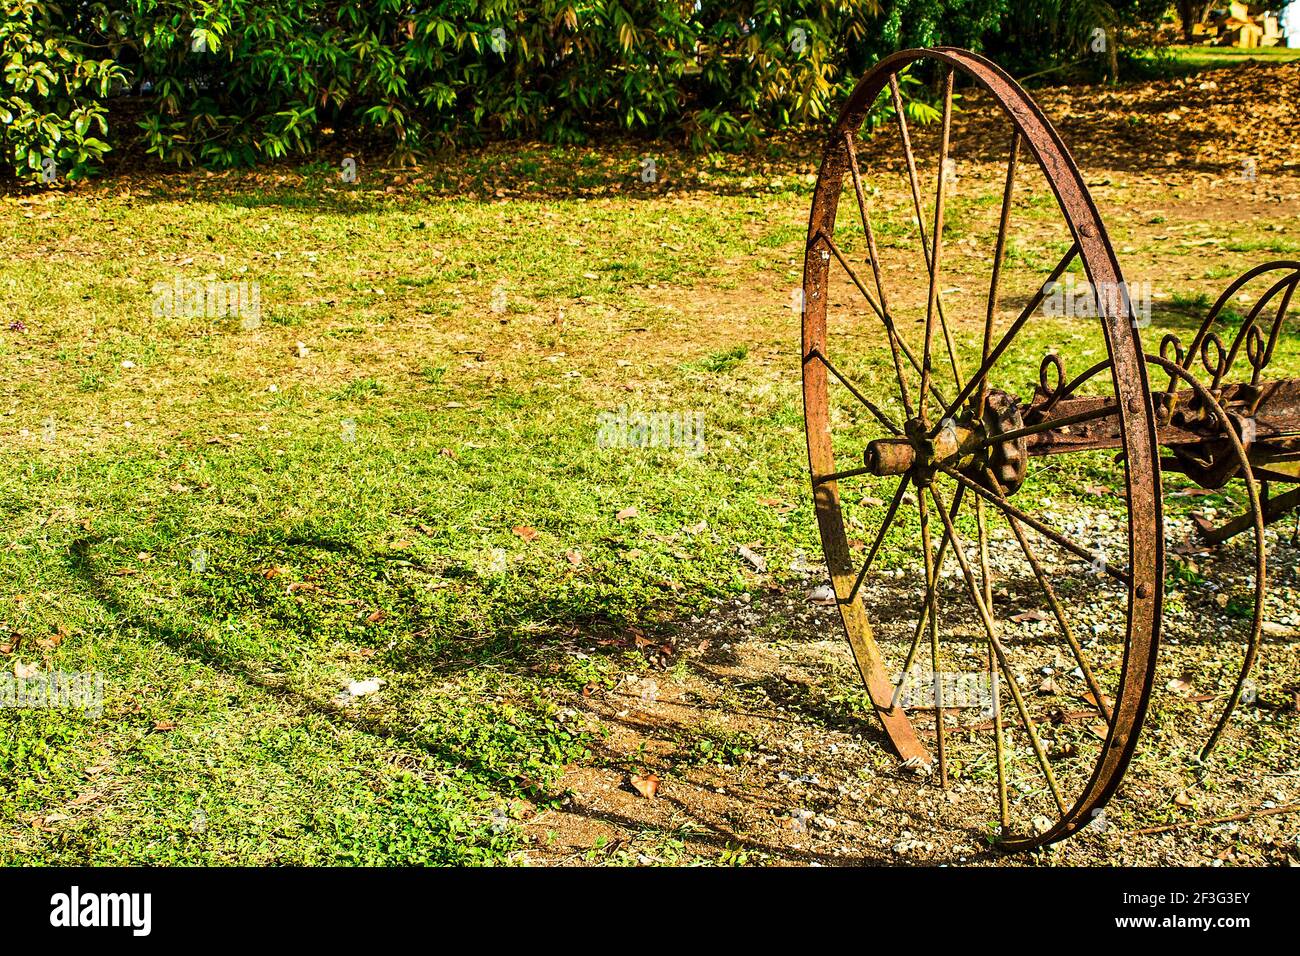 Una ruota di un vintage furrower getta la sua ombra al Miami-Dade County Redland Fruit and Spice Park in Florida. Foto Stock